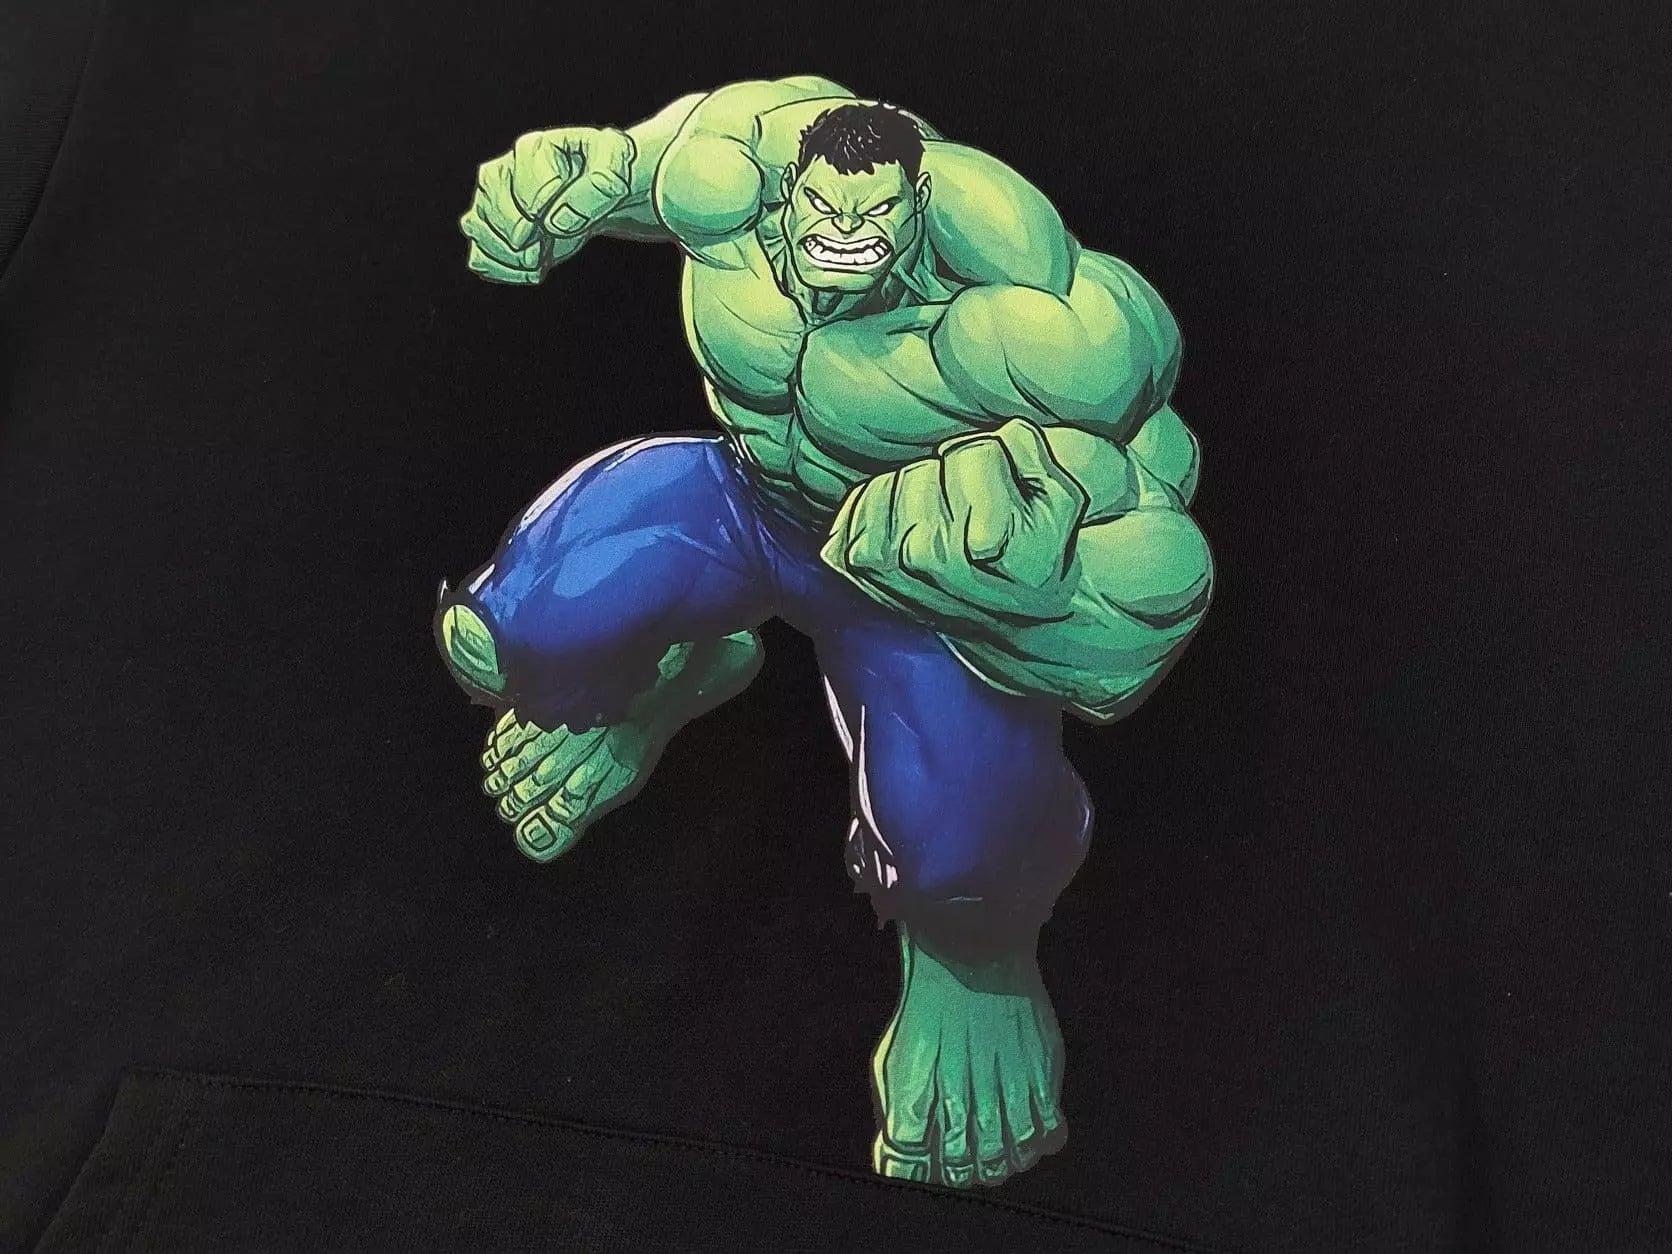 Moletom Hulk Smash com Capus - Preto